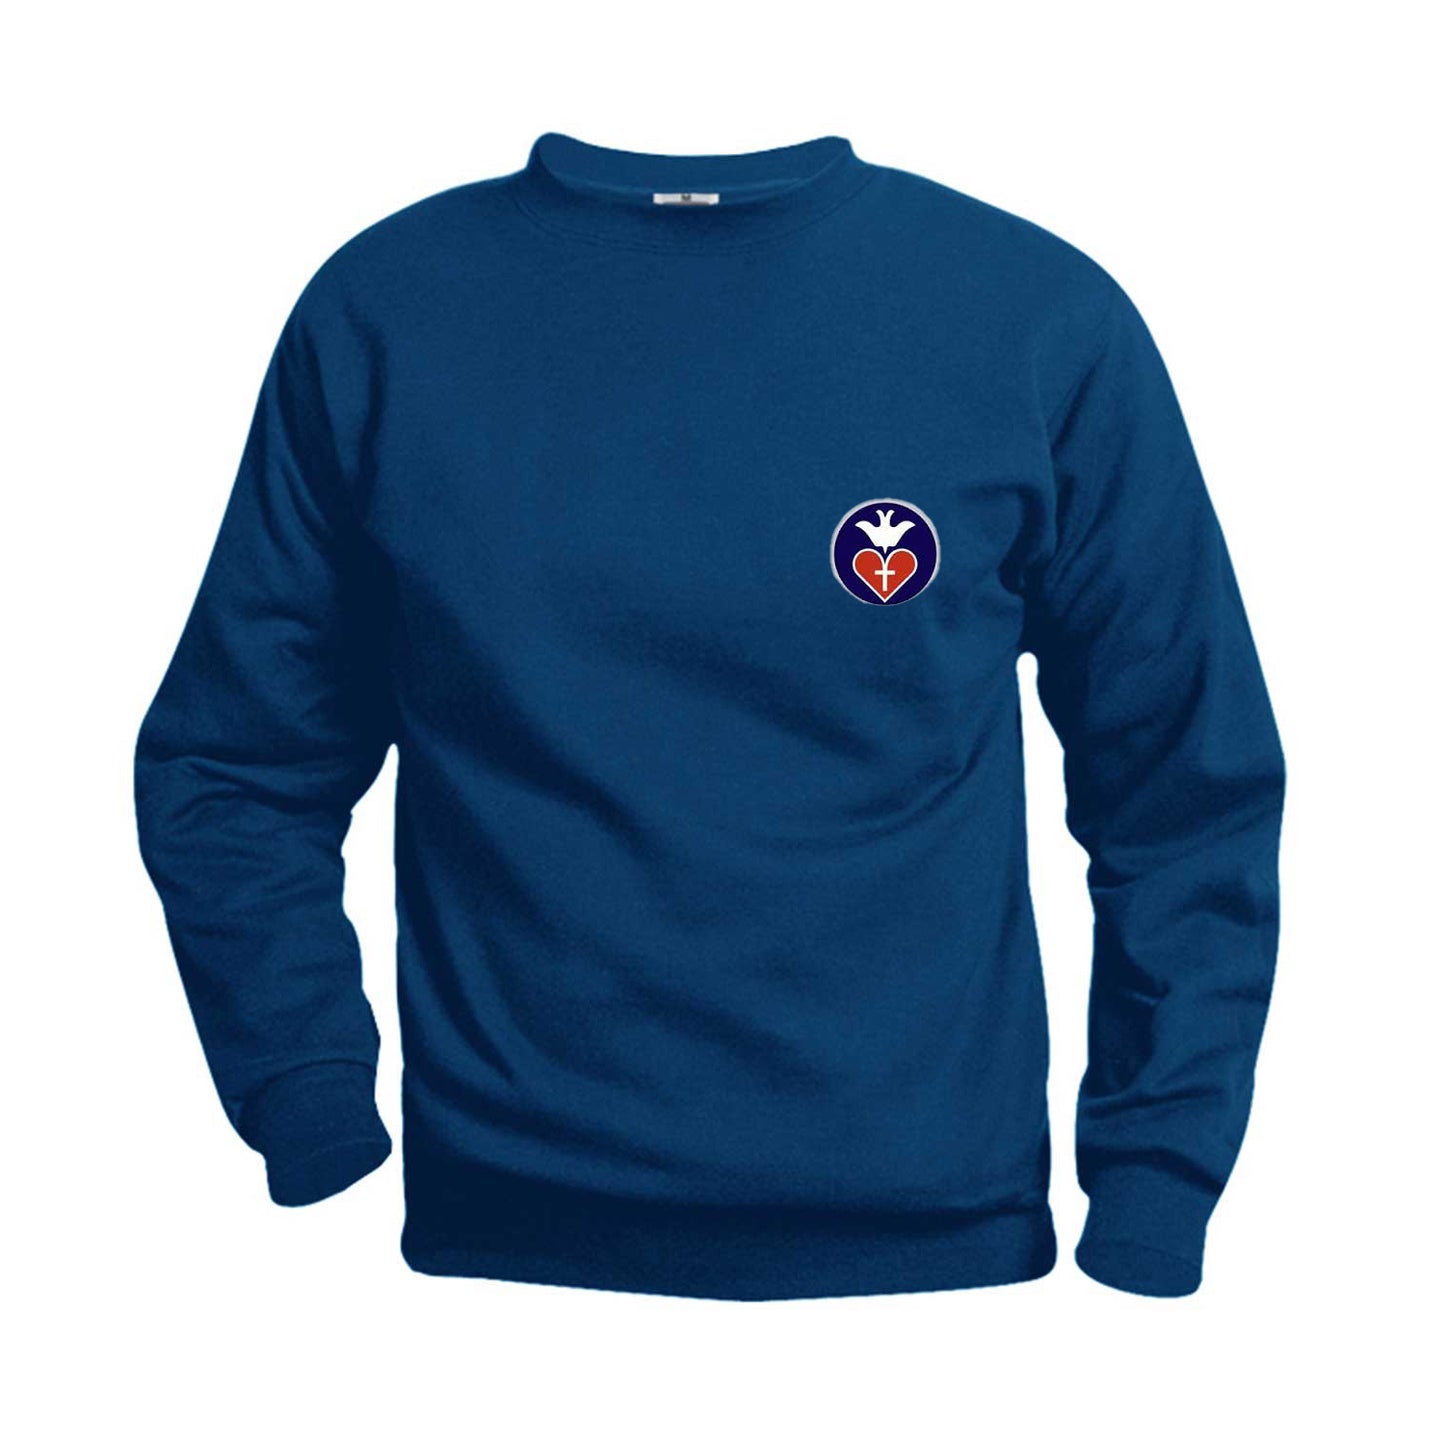 Adult Crewneck Sweatshirt With St. Vincent De Paul Logo